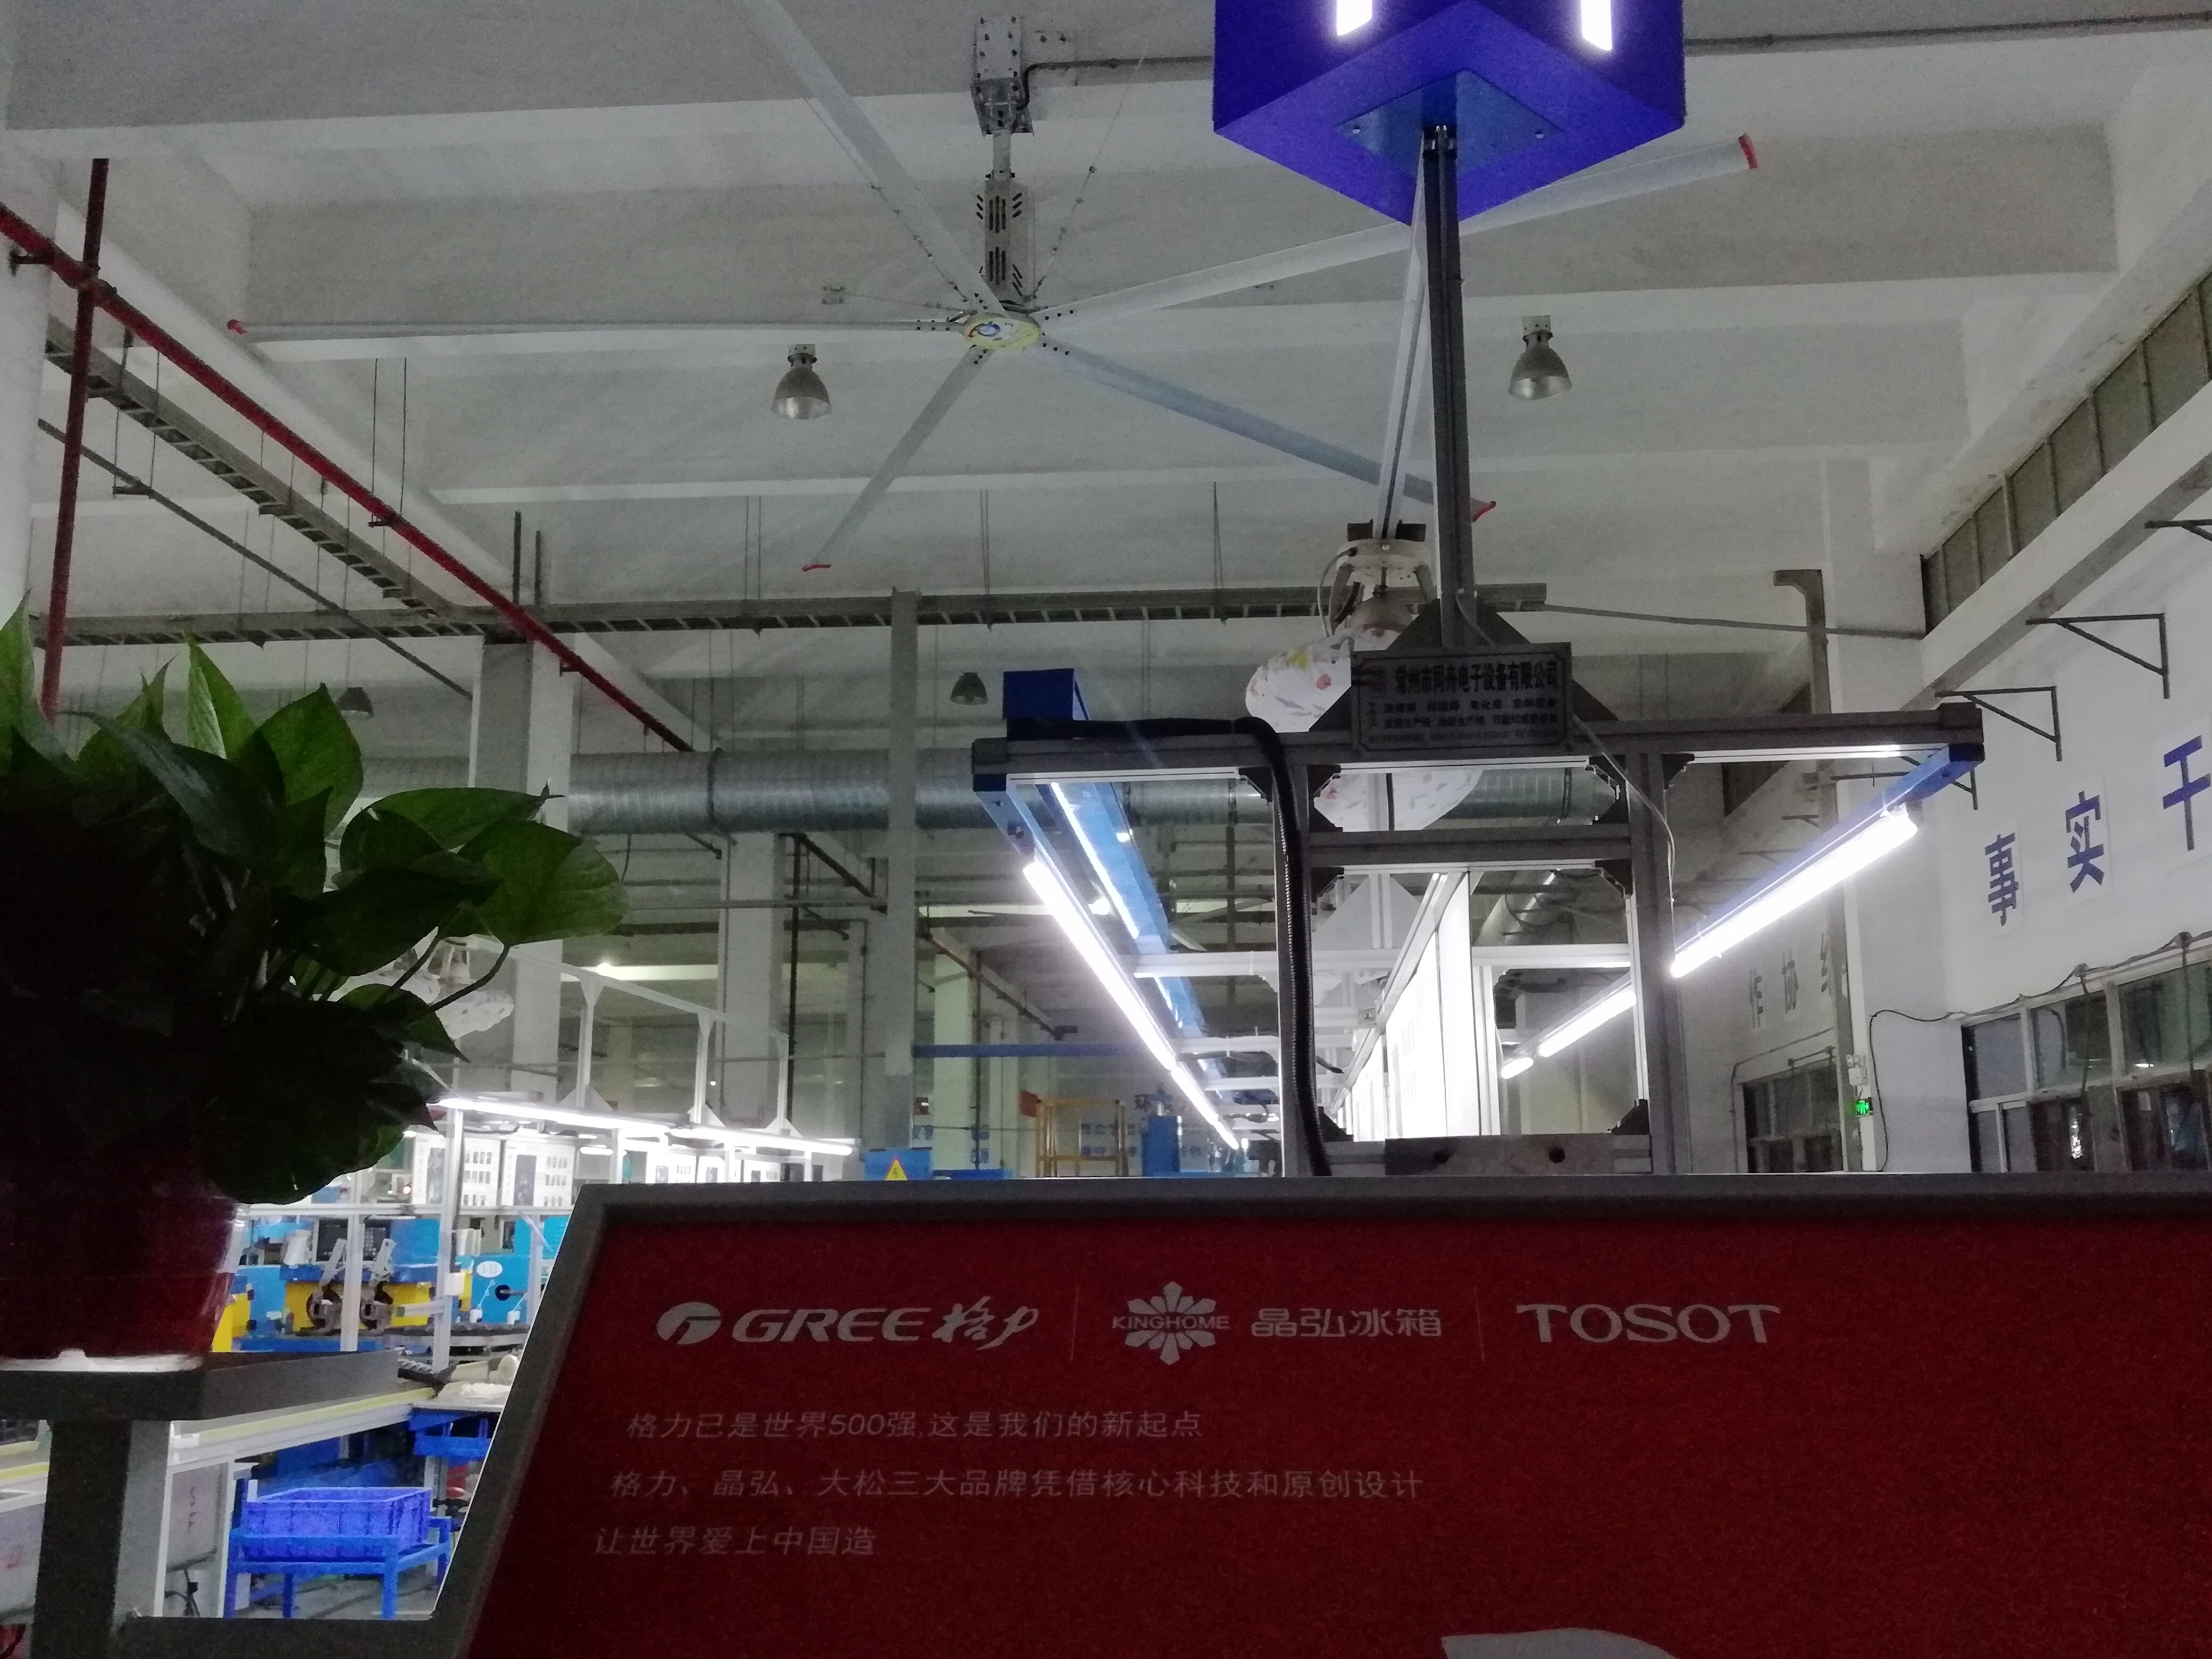 大型厂房工业吊扇使用安心,多重保护装置-【广州奇翔】